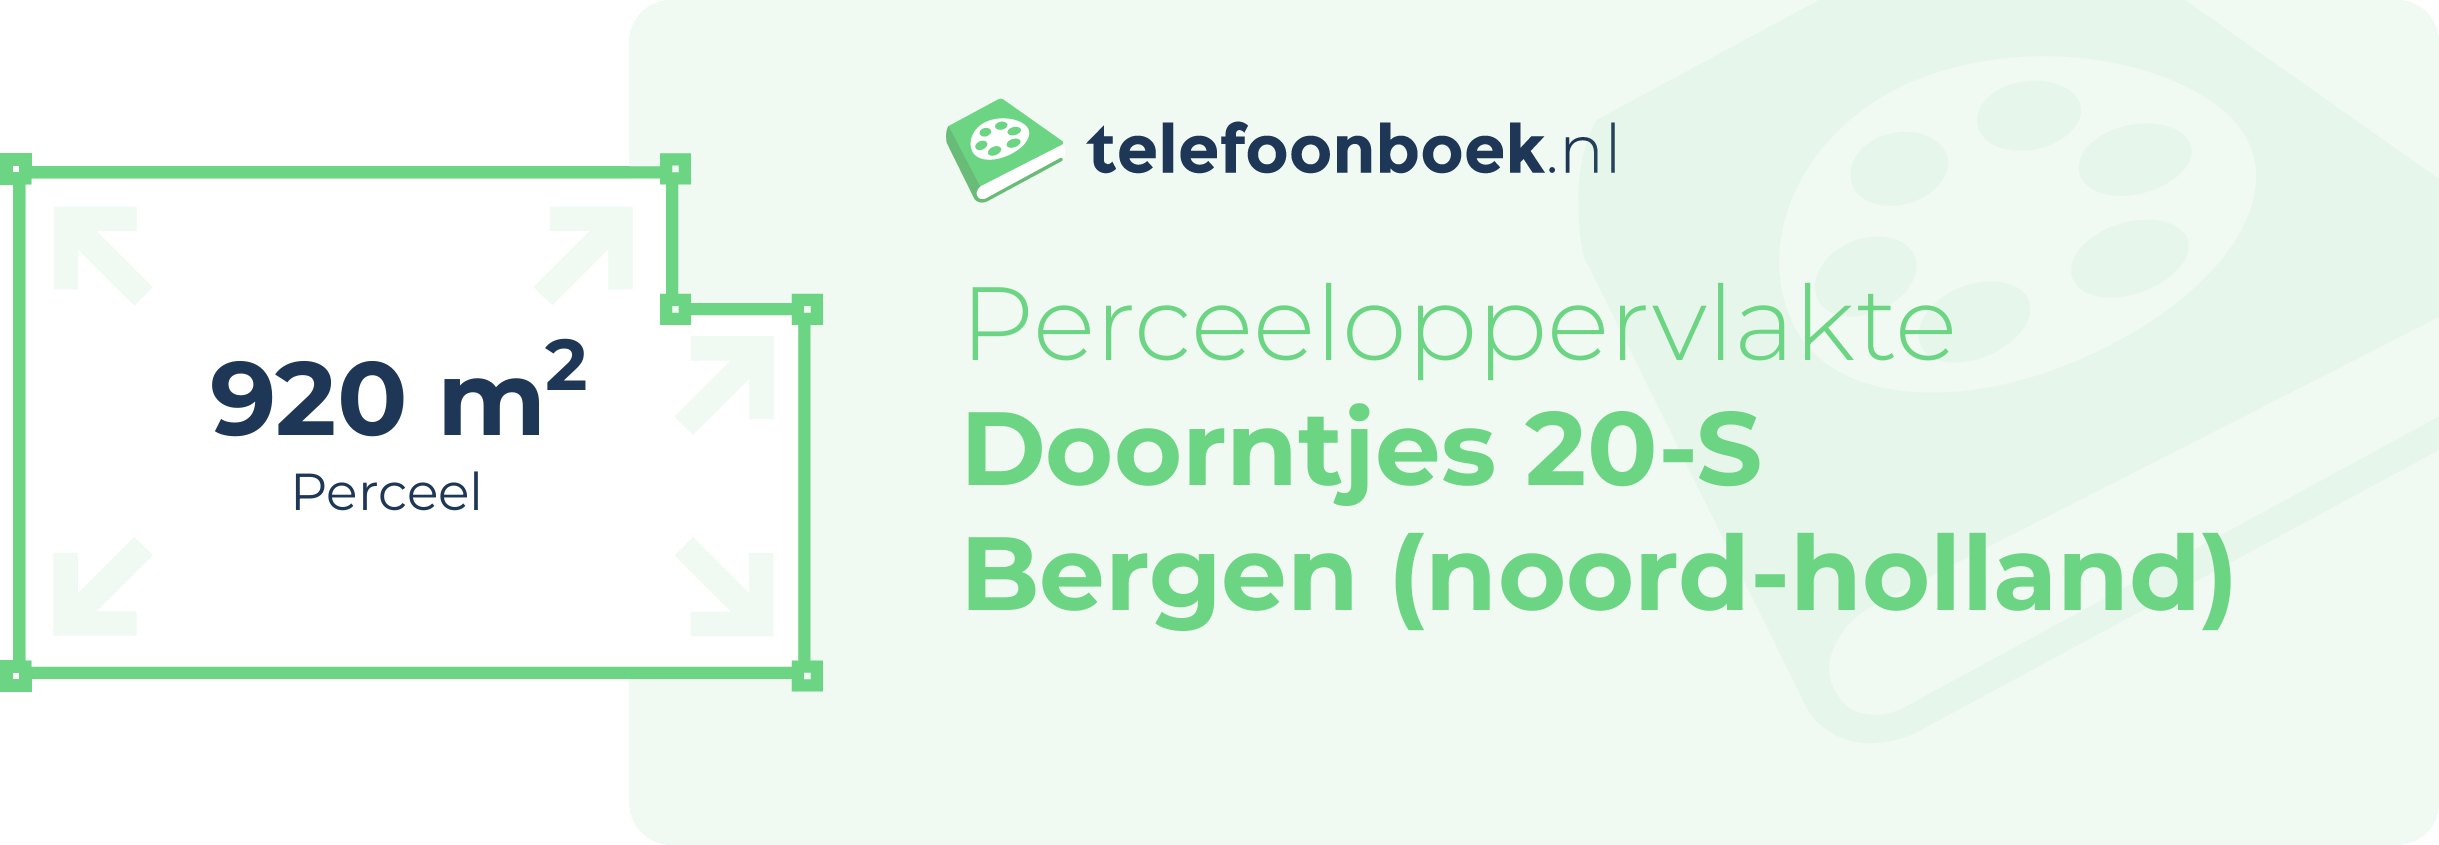 Perceeloppervlakte Doorntjes 20-S Bergen (Noord-Holland)